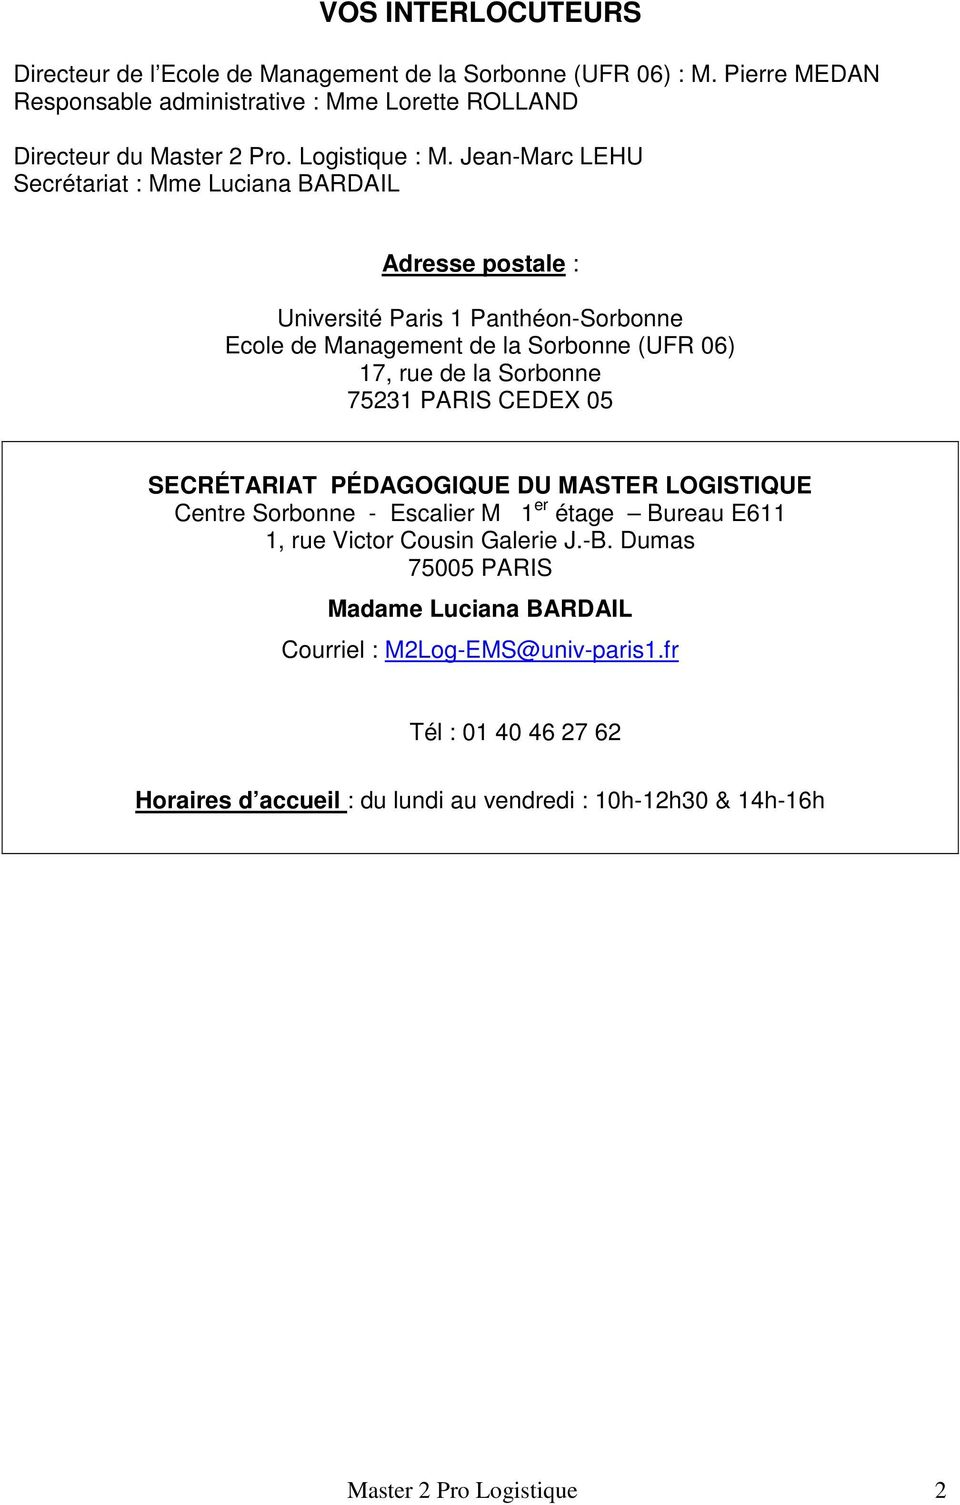 Jean-Marc LEHU Secrétariat : Mme Luciana BARDAIL Adresse postale : Université Paris 1 Panthéon-Sorbonne Ecole de Management de la Sorbonne (UFR 06) 17, rue de la Sorbonne